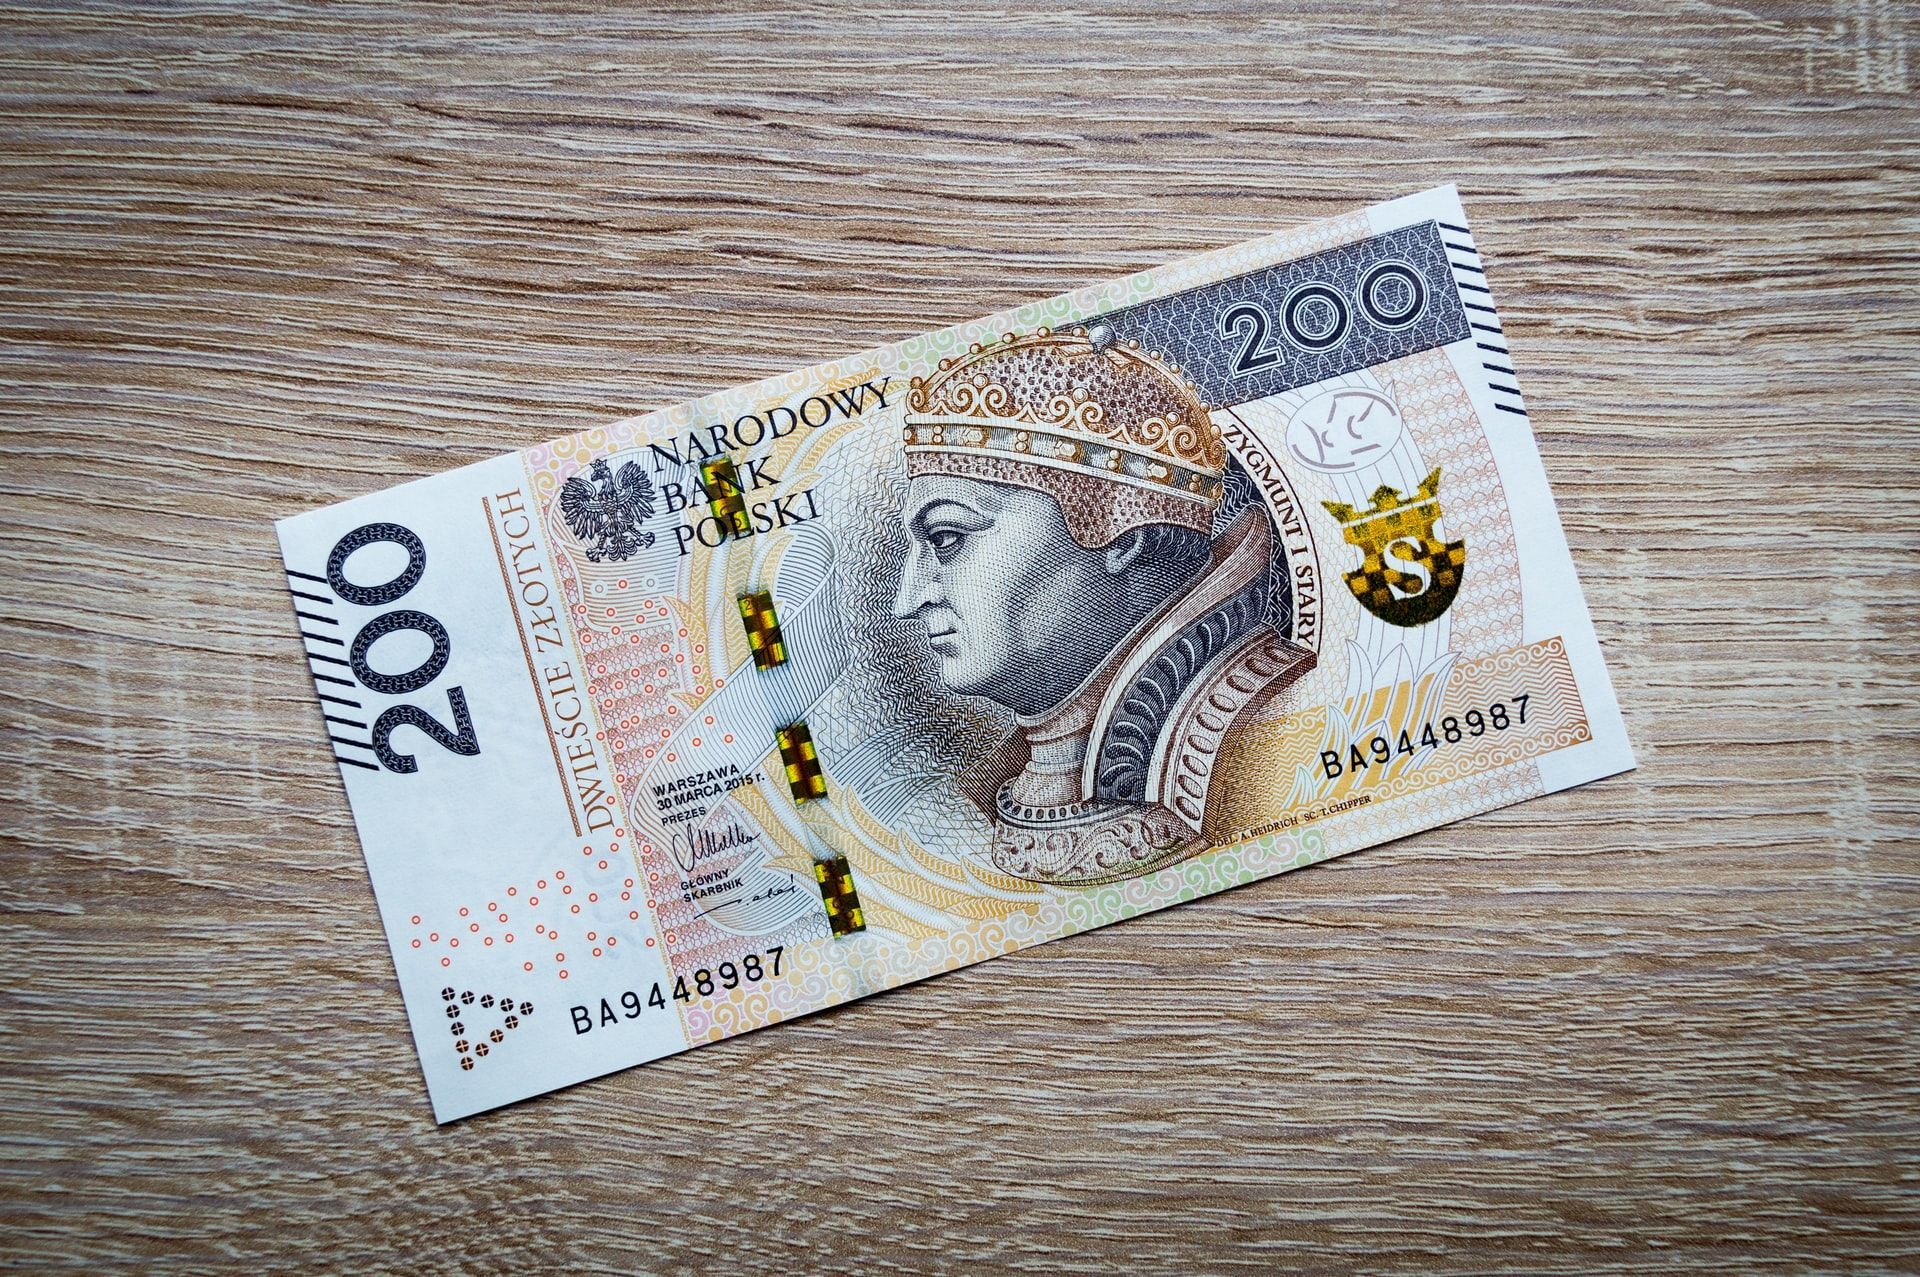 Українцям у Польщі виплатять додаткові 700 злотих: які умови отримання допомоги - Закордон